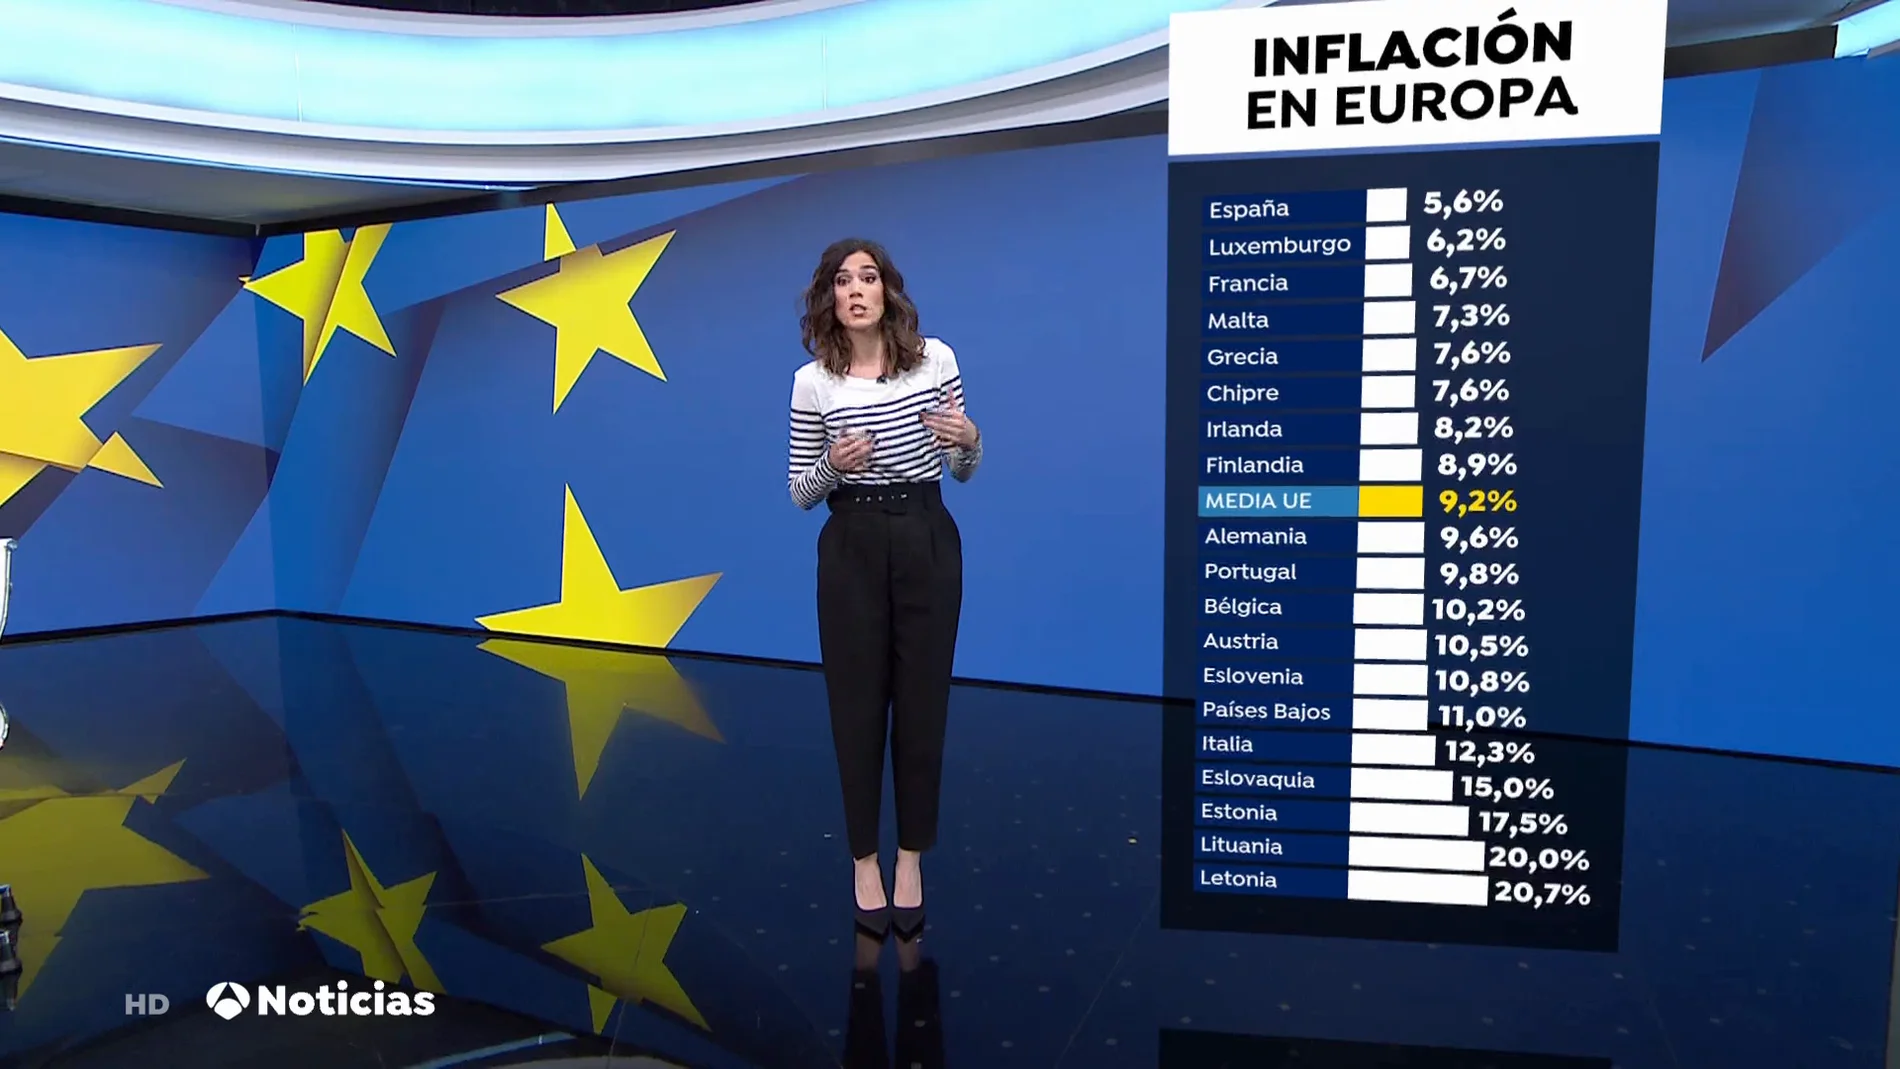 España se mantiene a la baja en la inflación frente al resto de países europeos, con un 5,6%